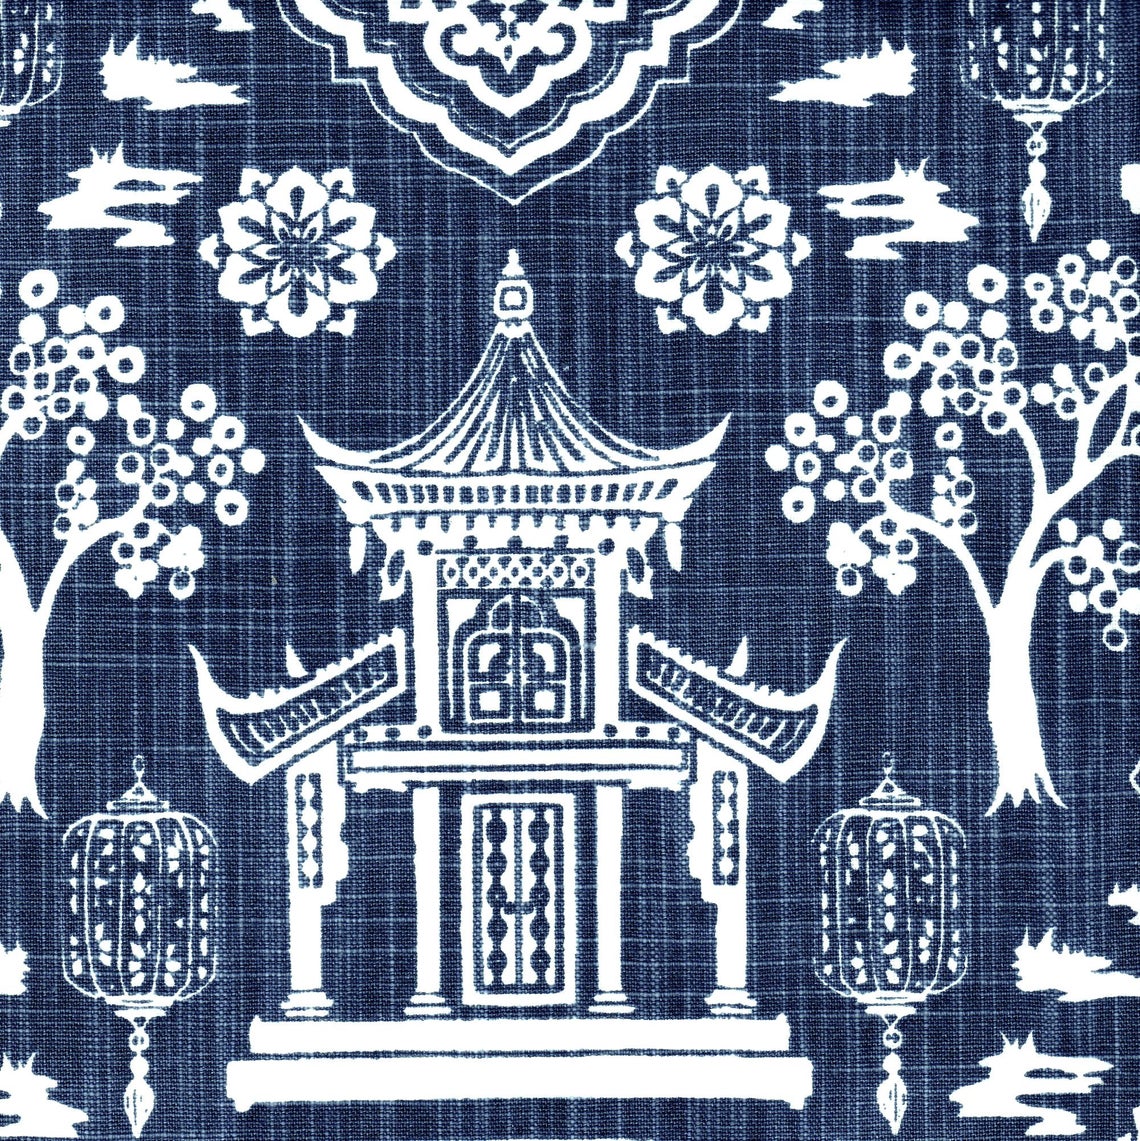 tie-up valance in spirit regal navy blue oriental toile